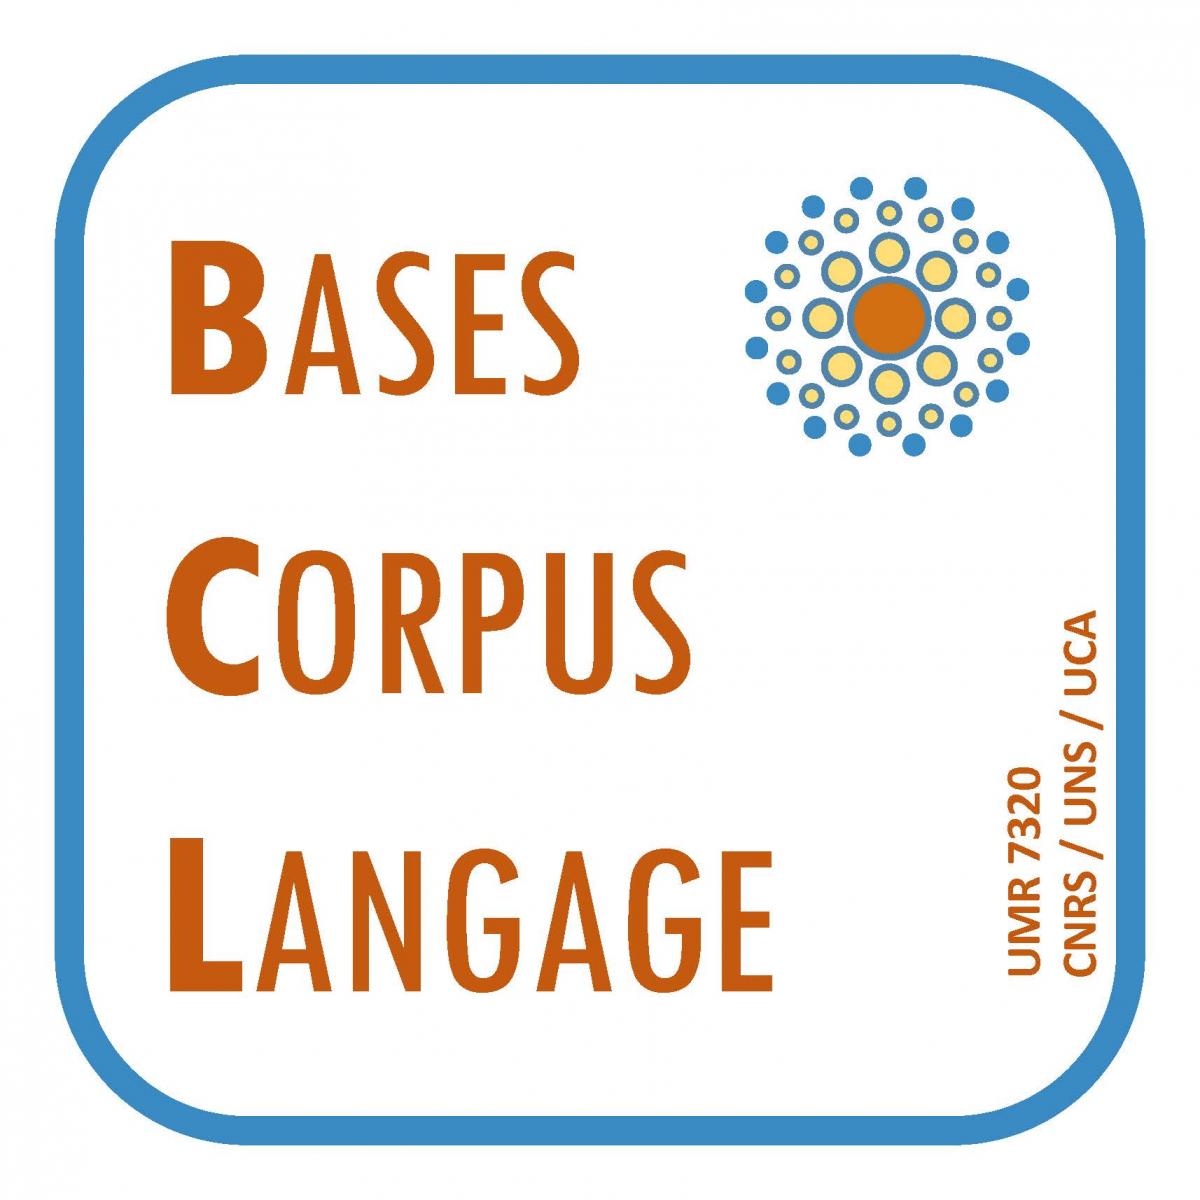 Bases, Corpus, Langage